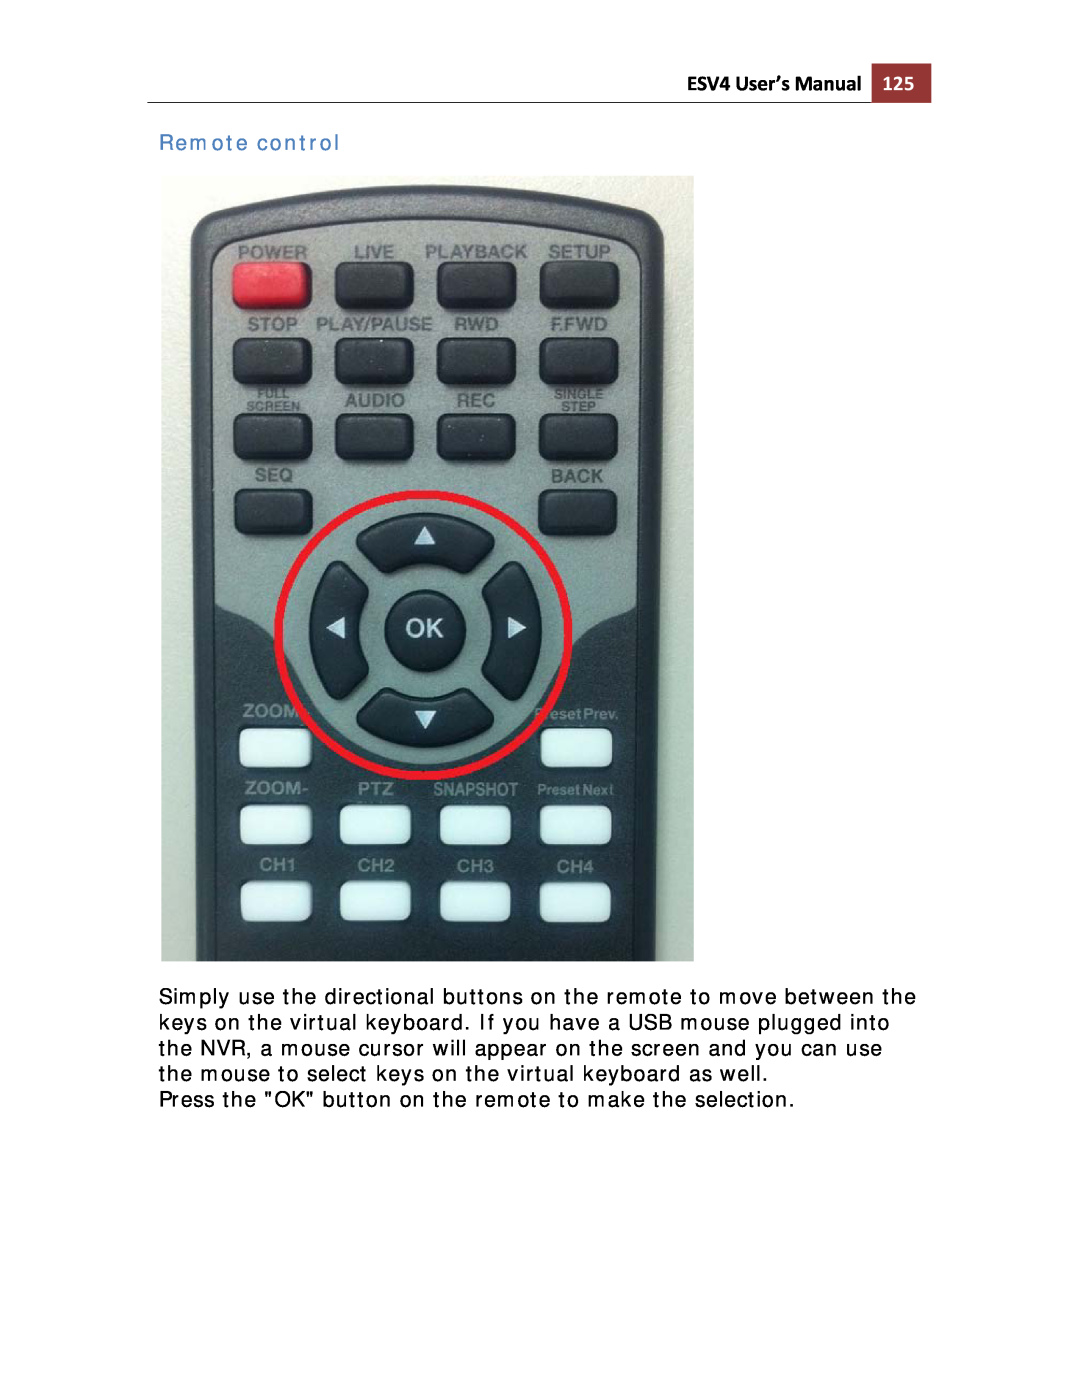 Toshiba ESV41T user manual Remote control, ESV4 User’s Manual 